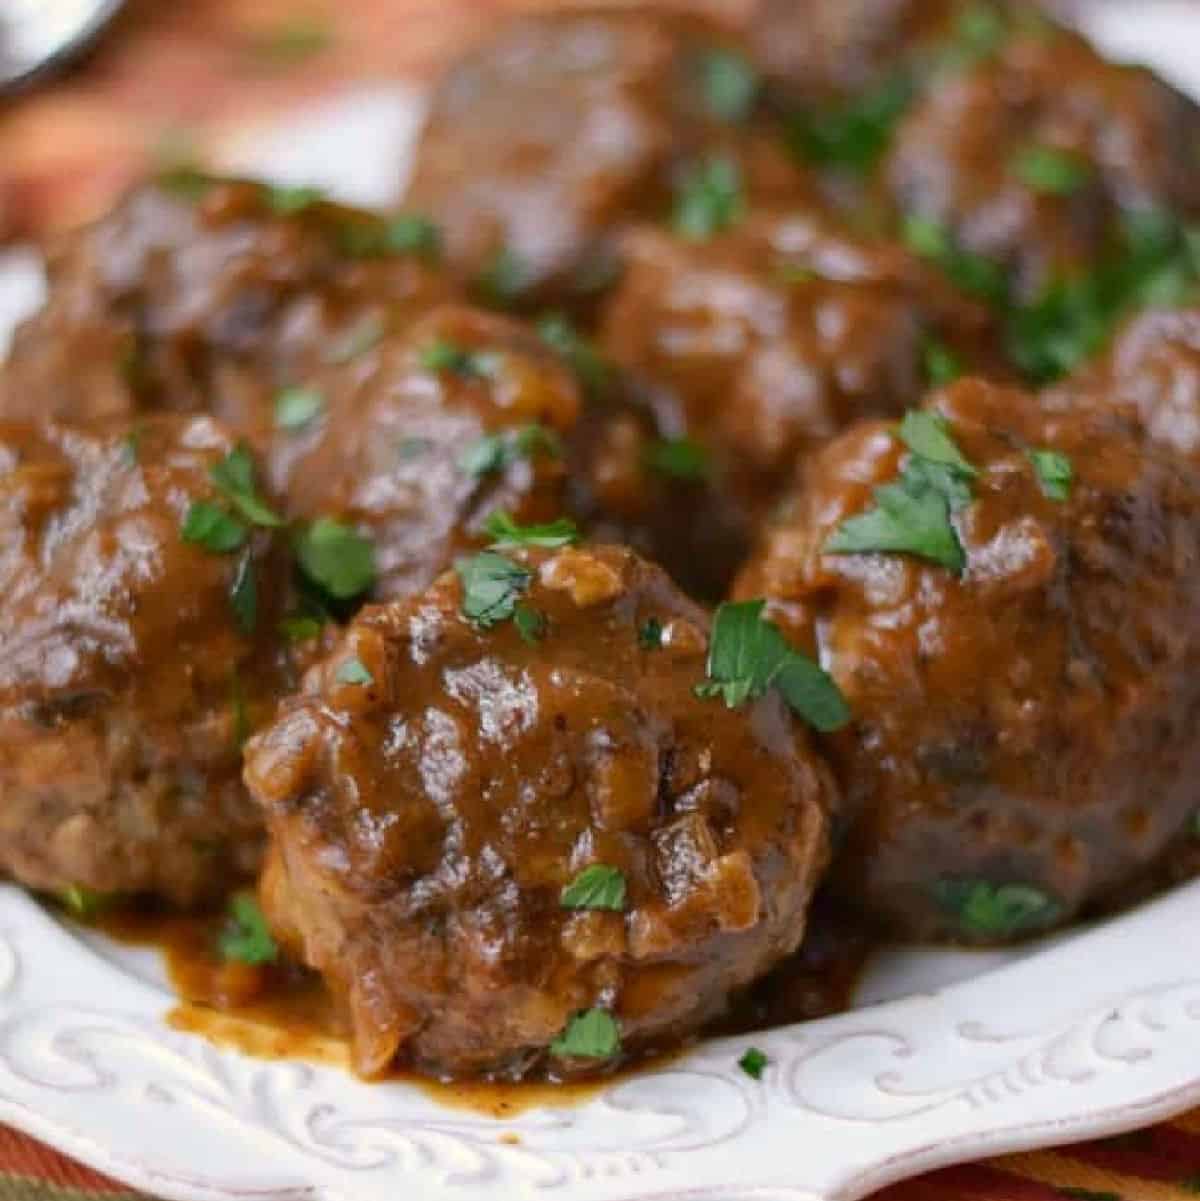 Liege Meatballs on a serving platter.